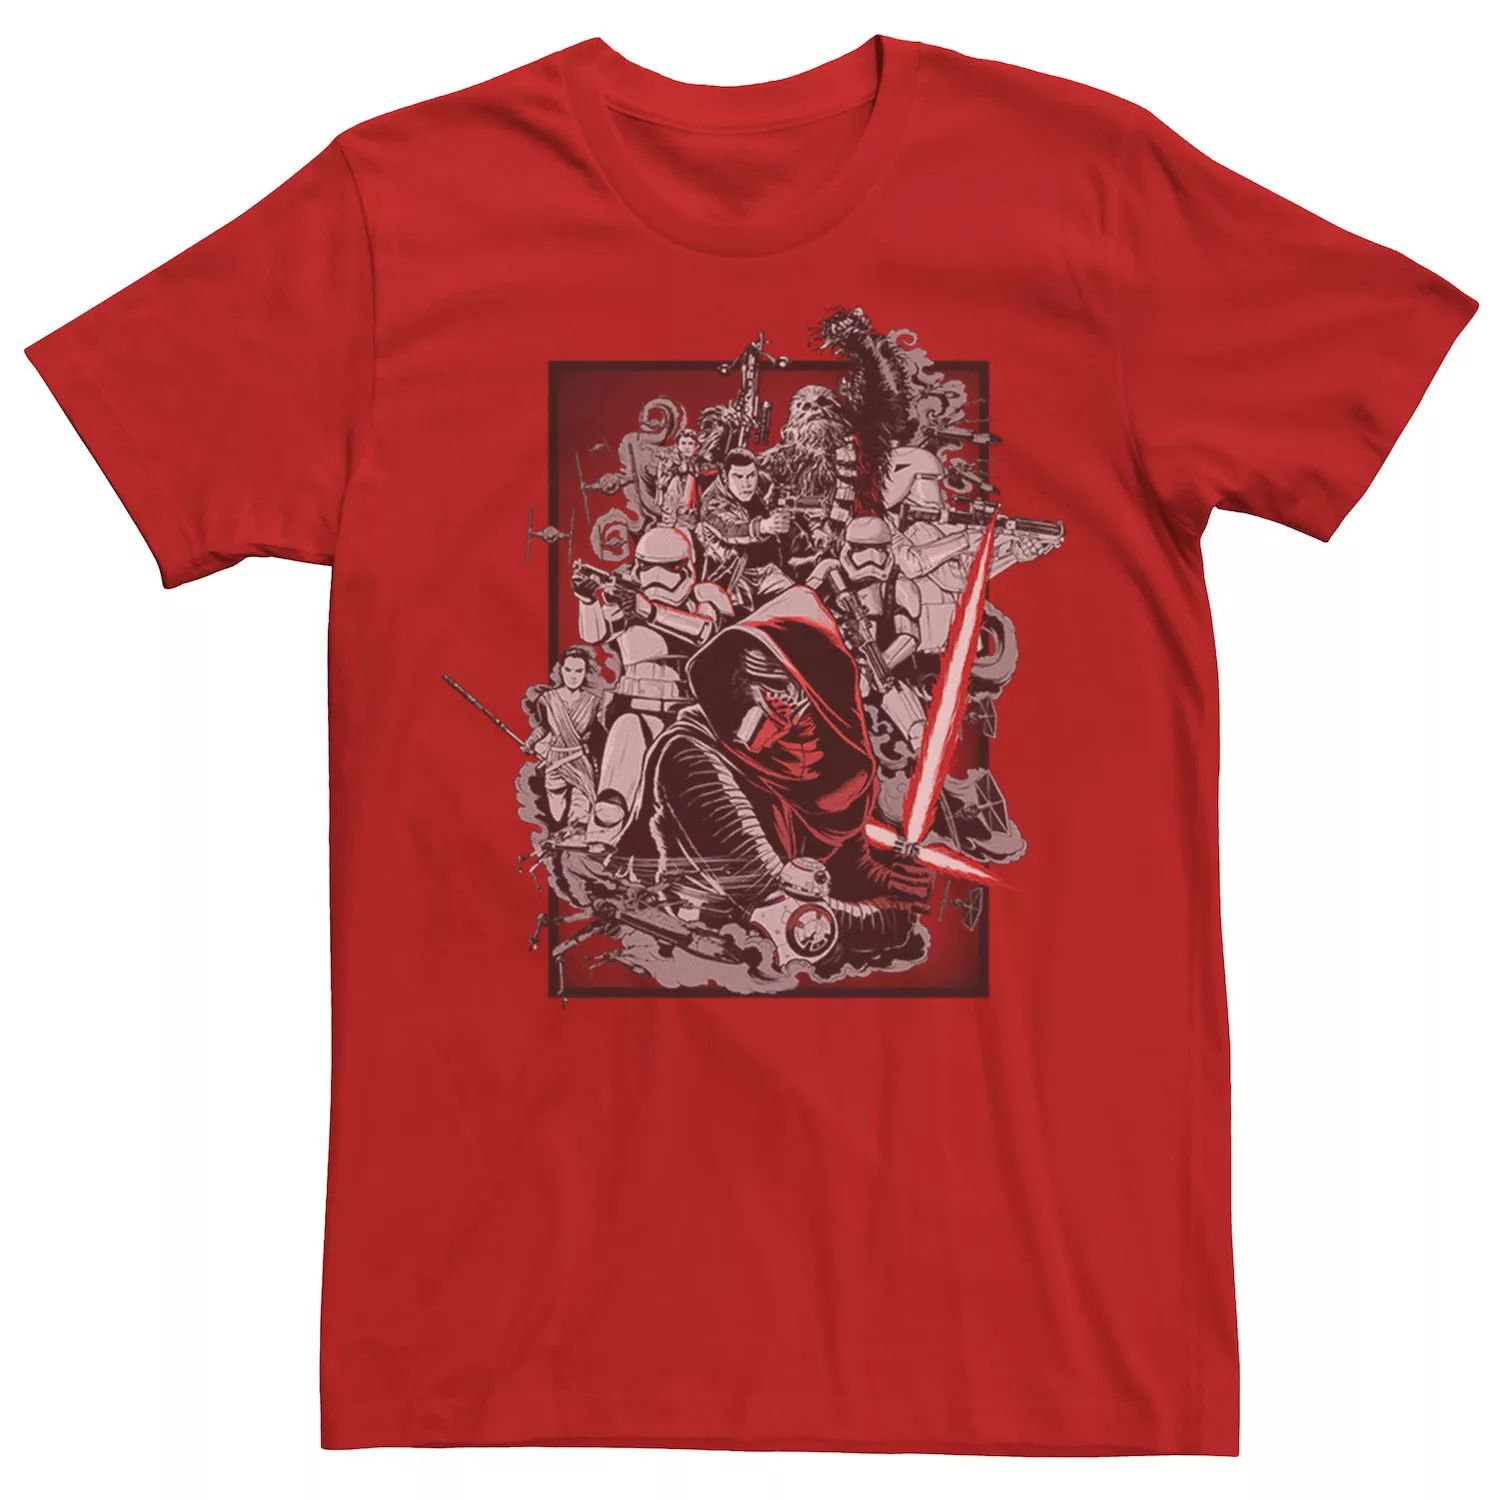 Мужская футболка с коллажем «Звездные войны, пробуждение силы» Star Wars, красный